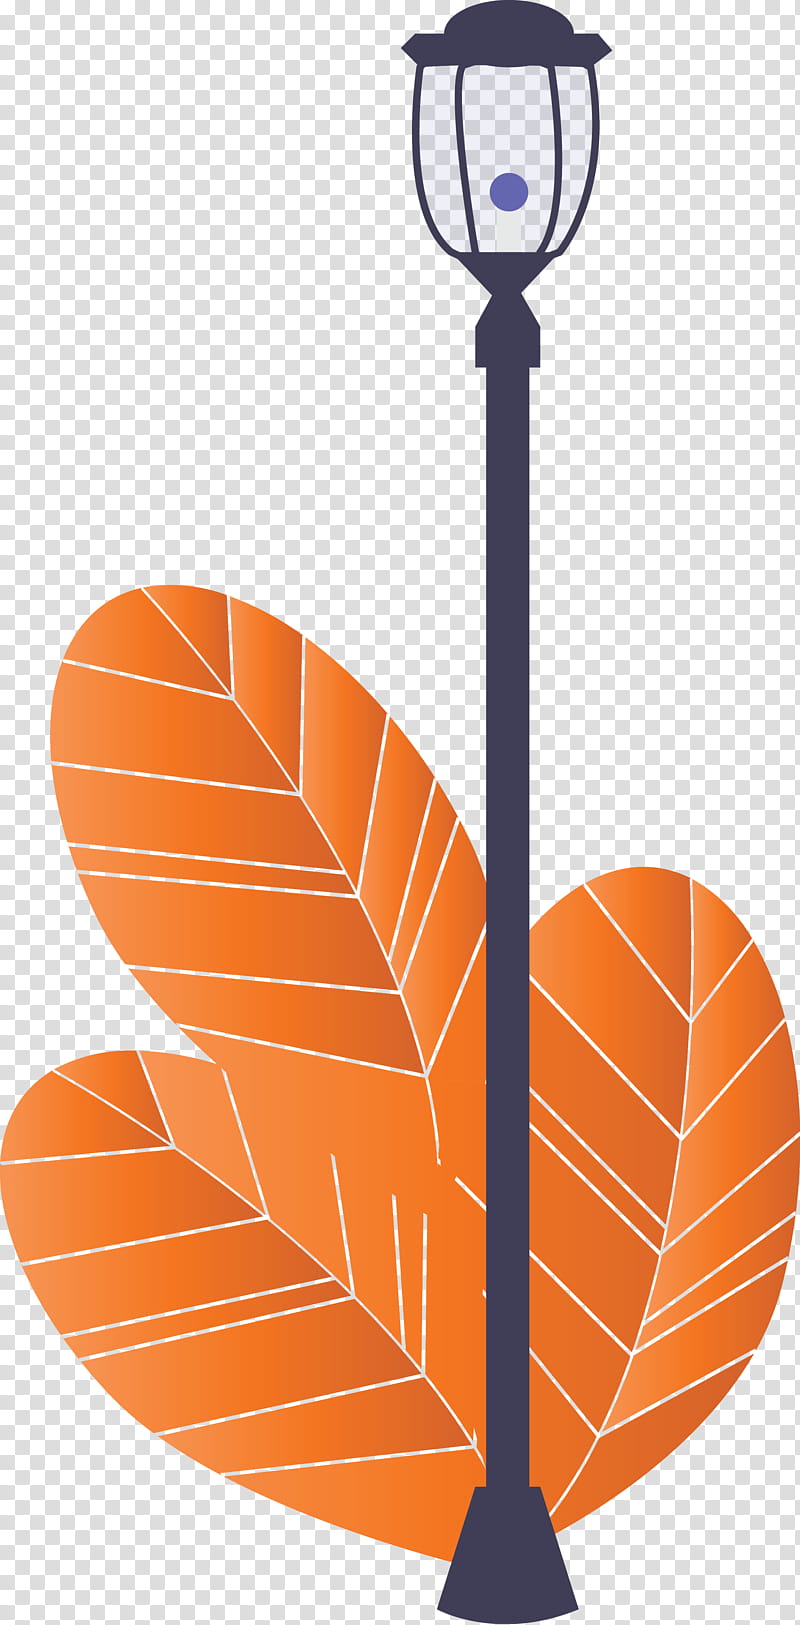 Street light tree, Orange, Basketball, Leaf, Team Sport, Basketball Hoop transparent background PNG clipart